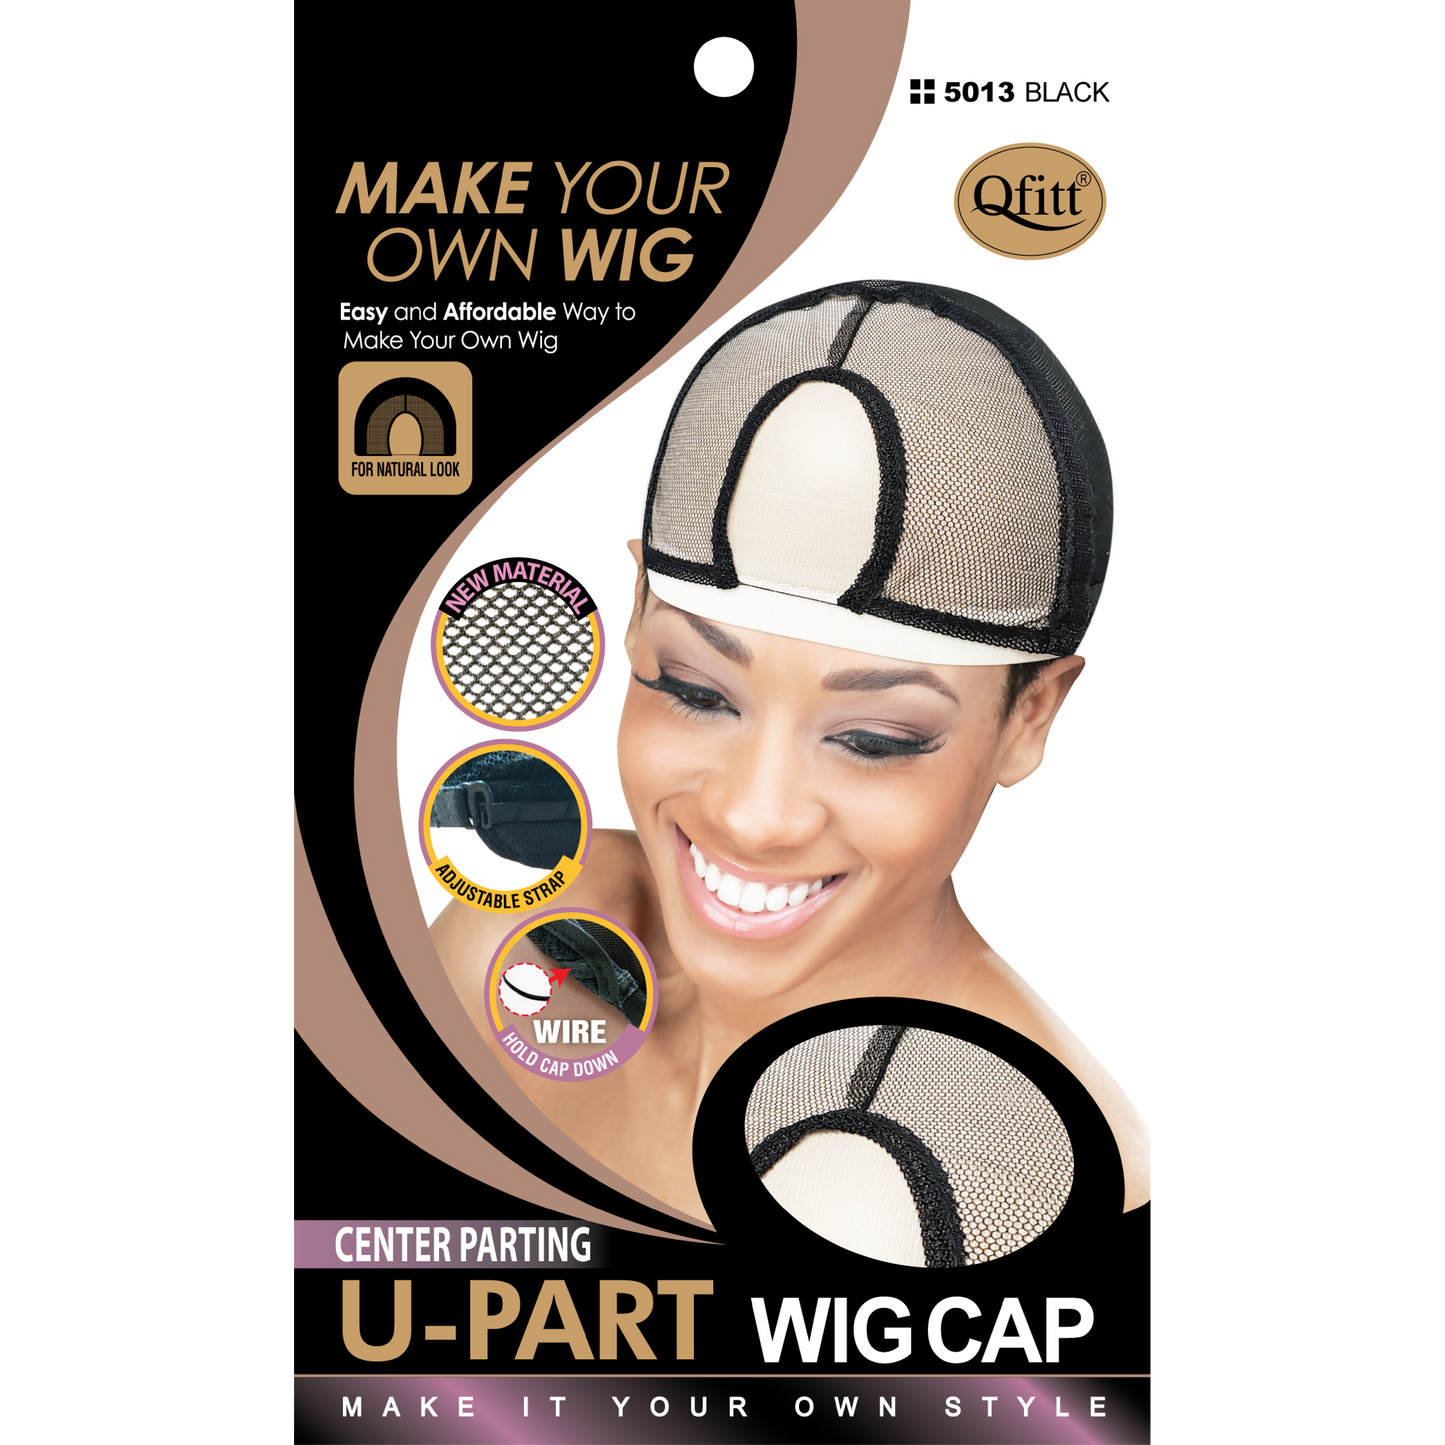 U-PART WIG CAP